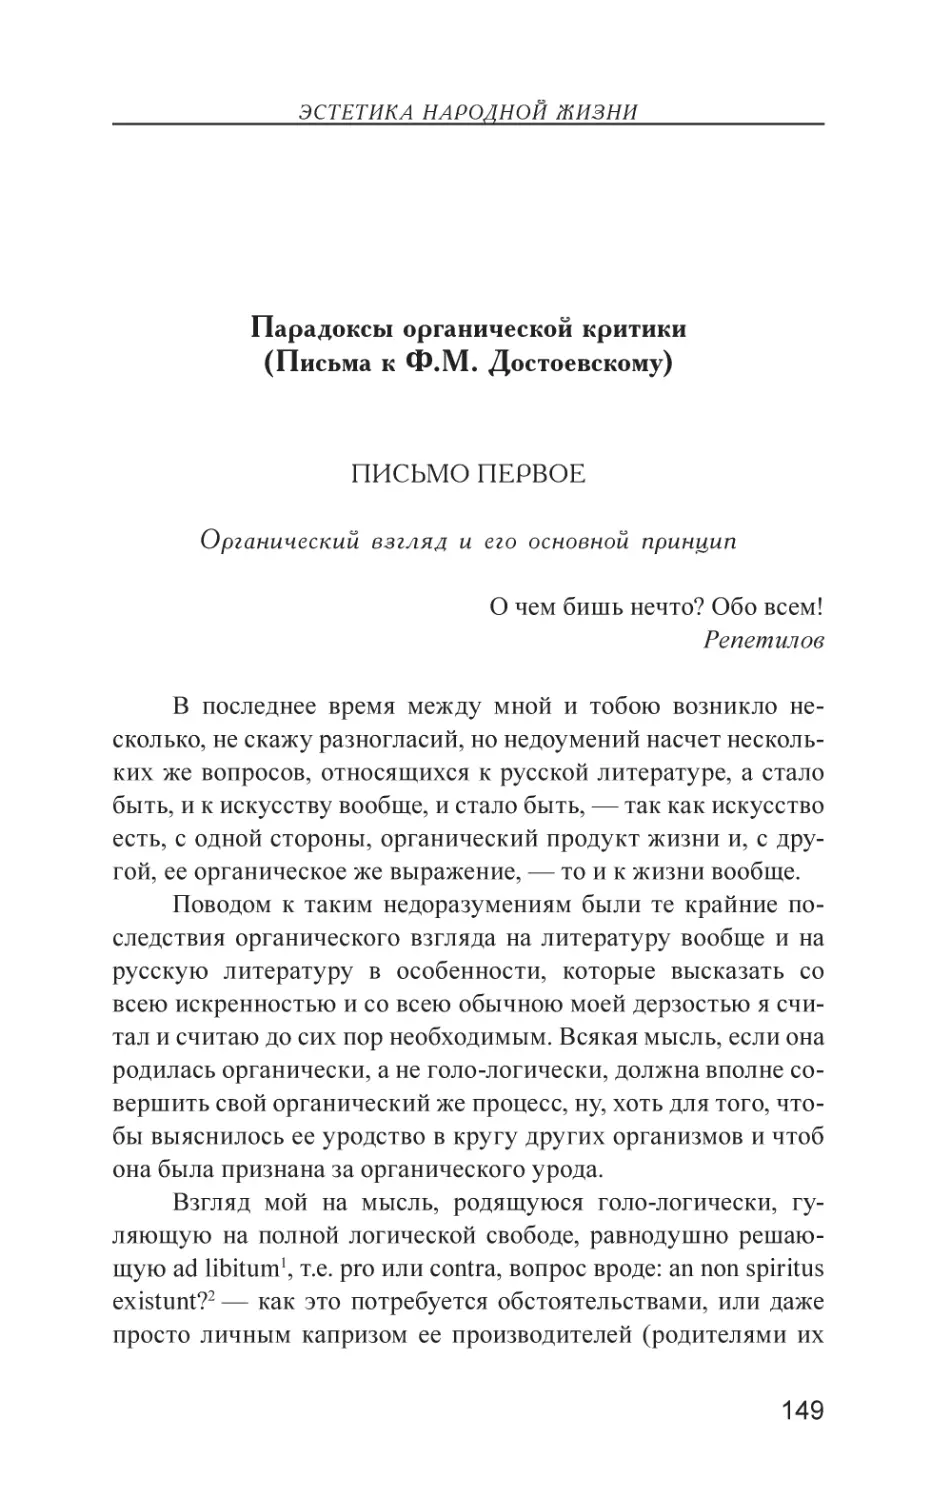 Парадоксы органической критики (Письма к Ф.М. Достоевскому)